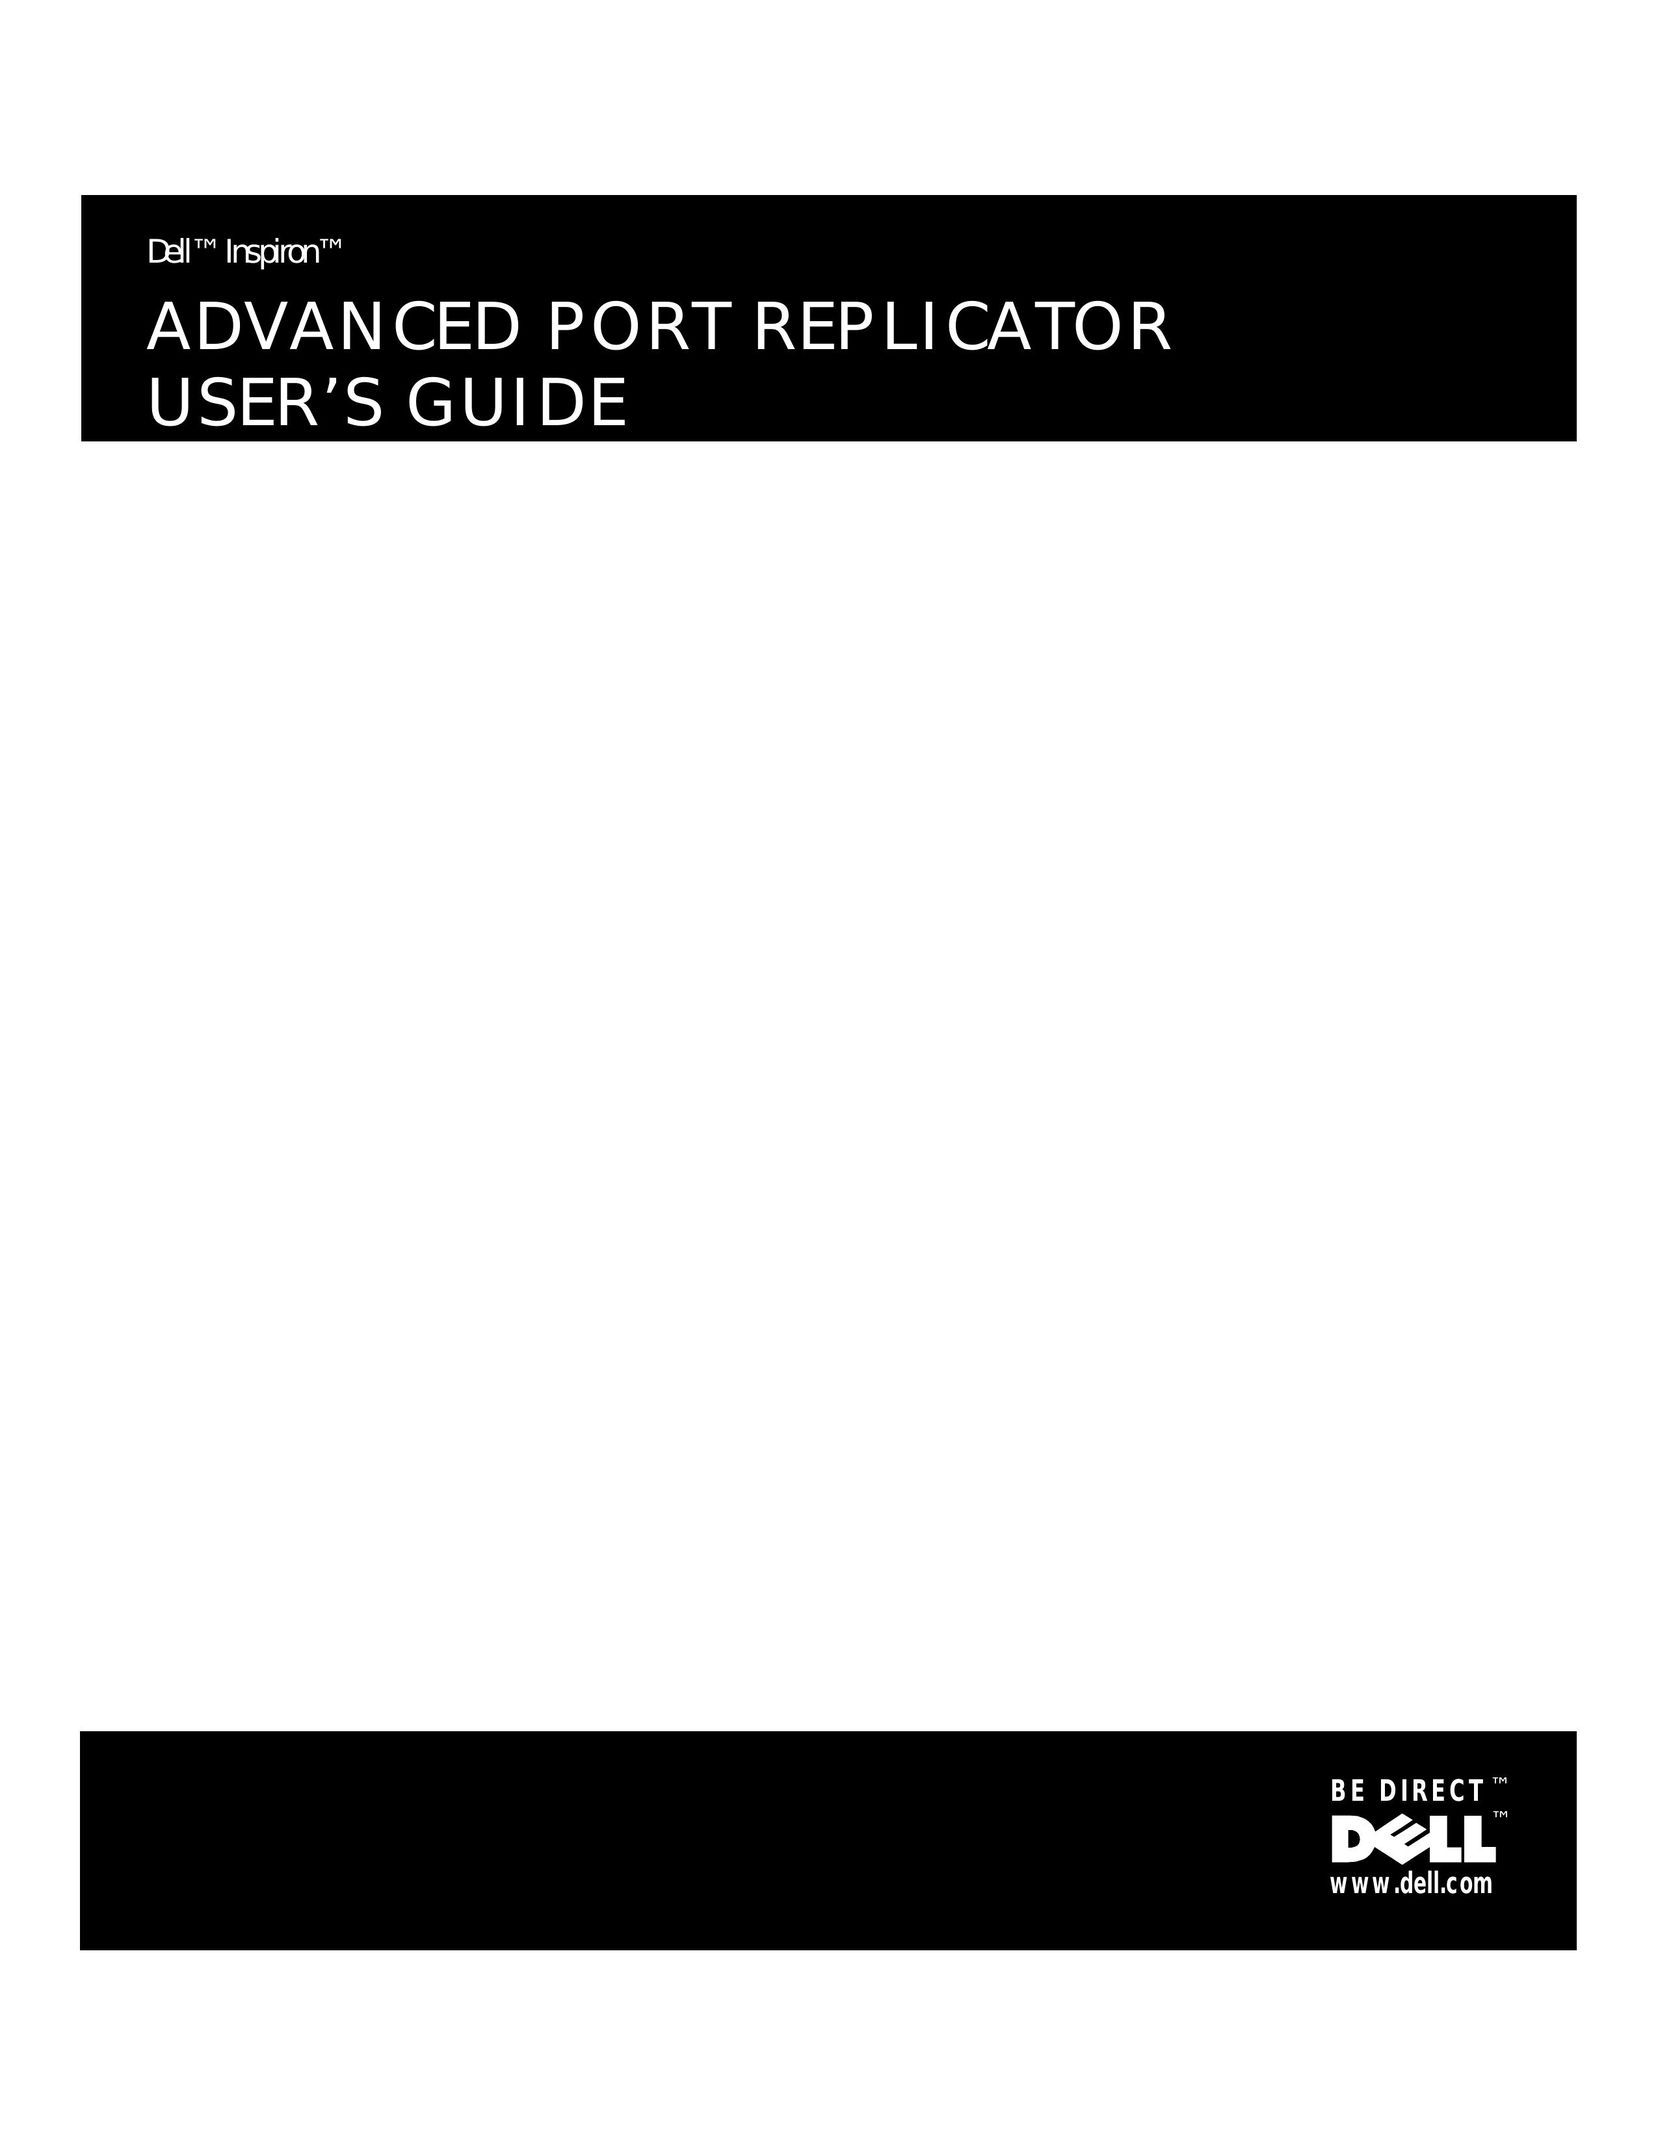 Dell ADVANCED PORT REPLICATOR Network Card User Manual